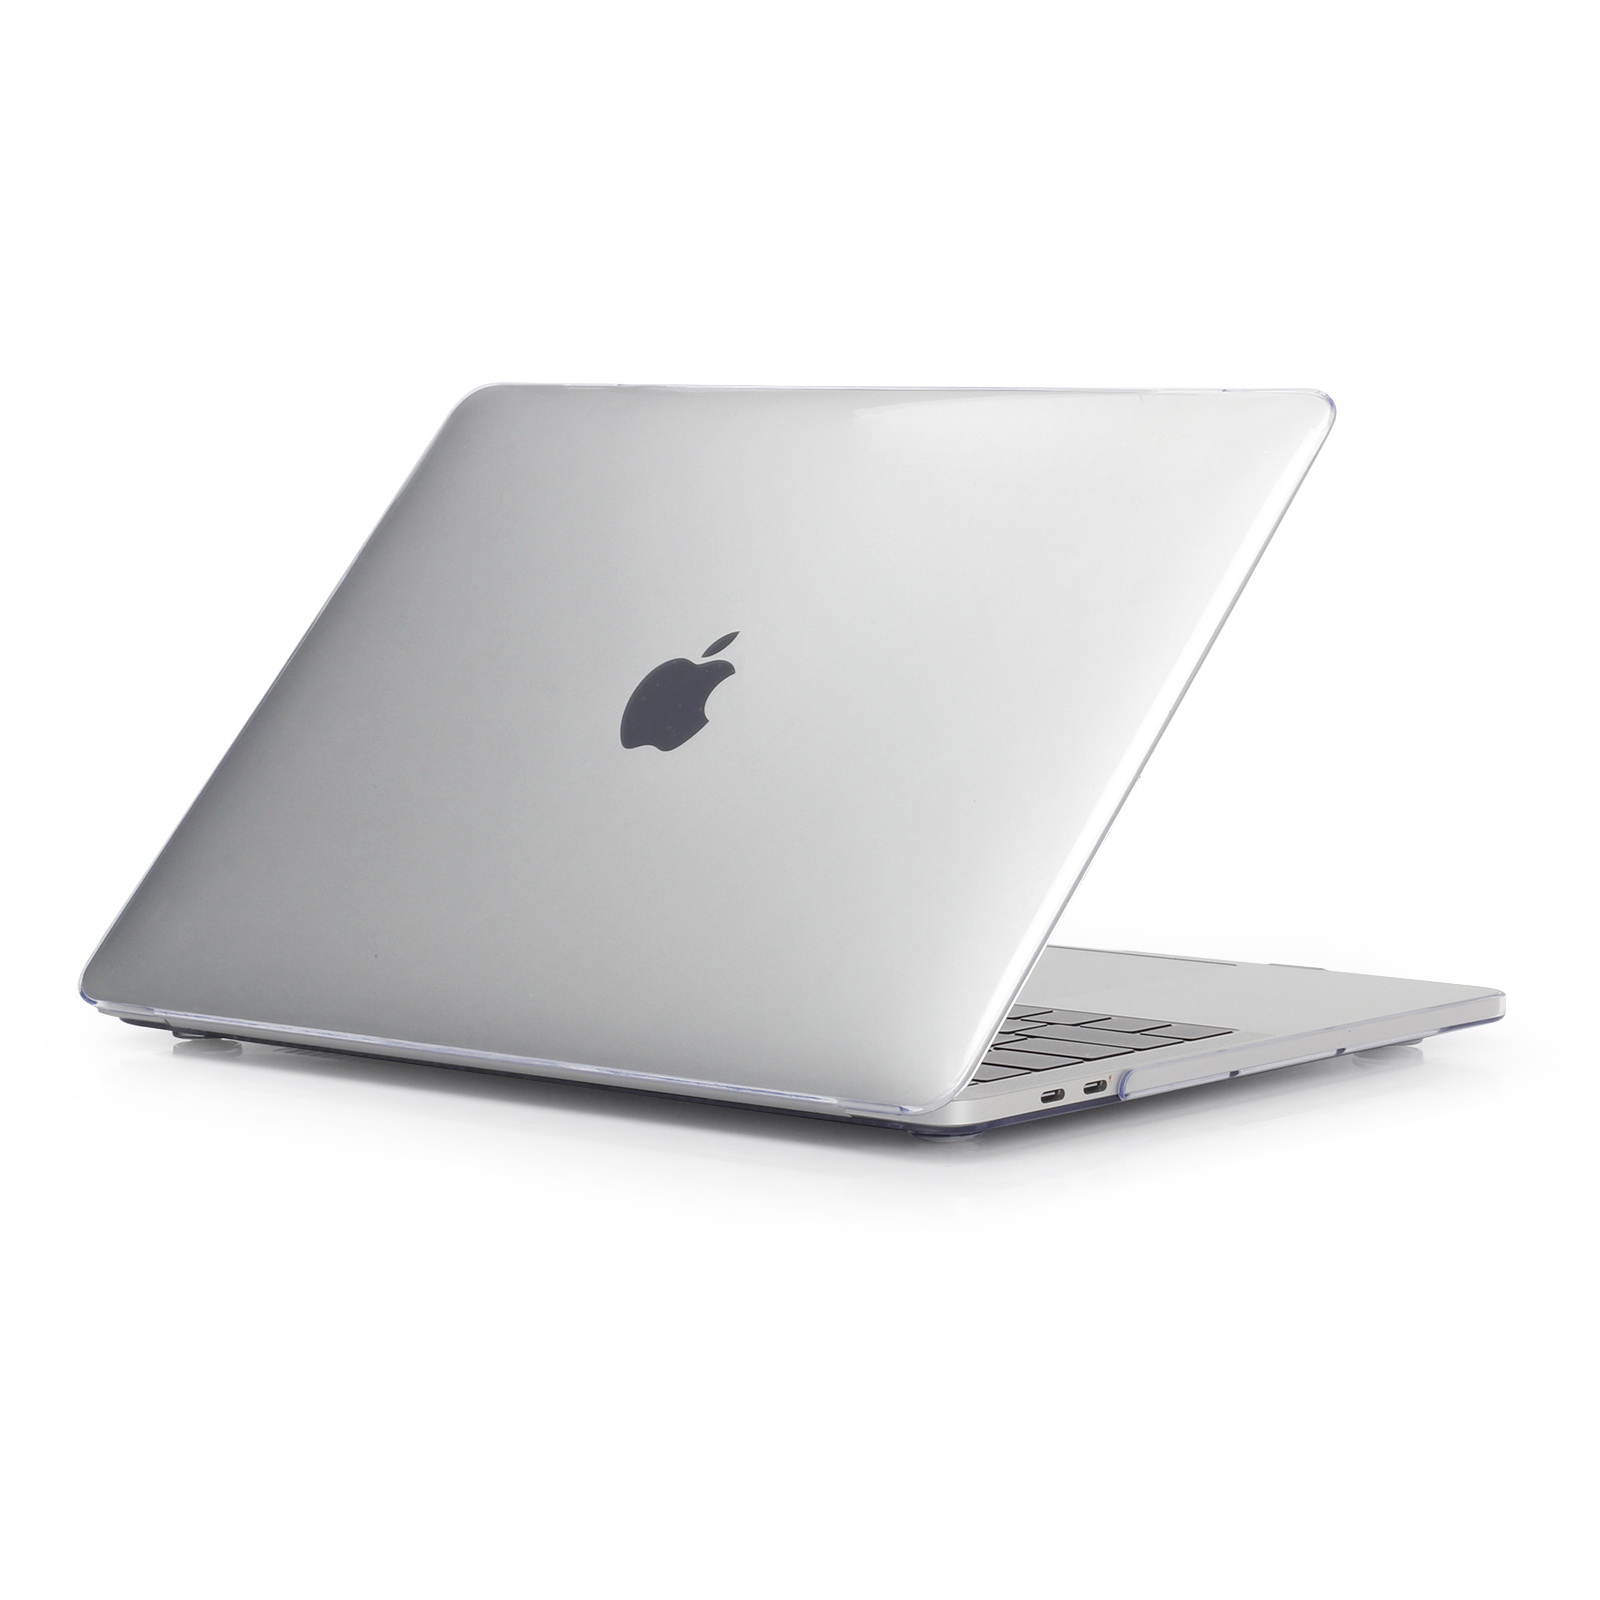 iPouzdro.cz pro MacBook Pro 15 (2012-2015) 2222221002023 transparentní